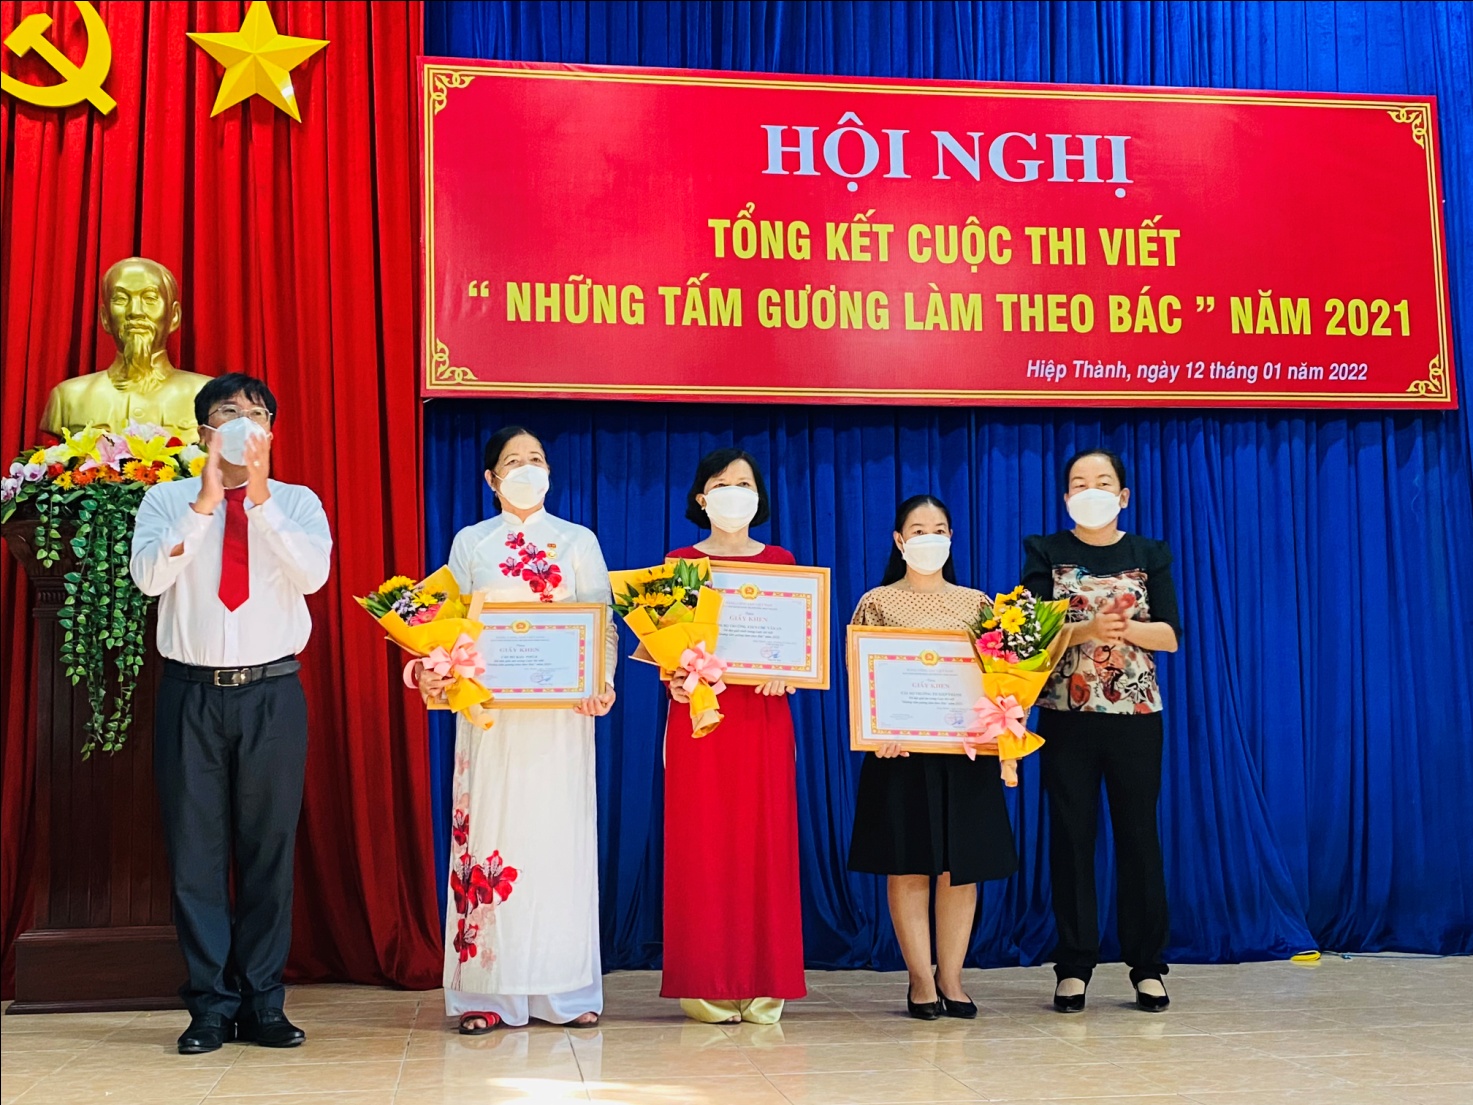 Giáo viên Trường THCS Chu Văn An, thành phố Thủ Dầu Một, tỉnh Bình Dương tham dự Hội nghị Tổng kết Cuộc thi viết “Những tấm gương làm theo Bác” năm 2021